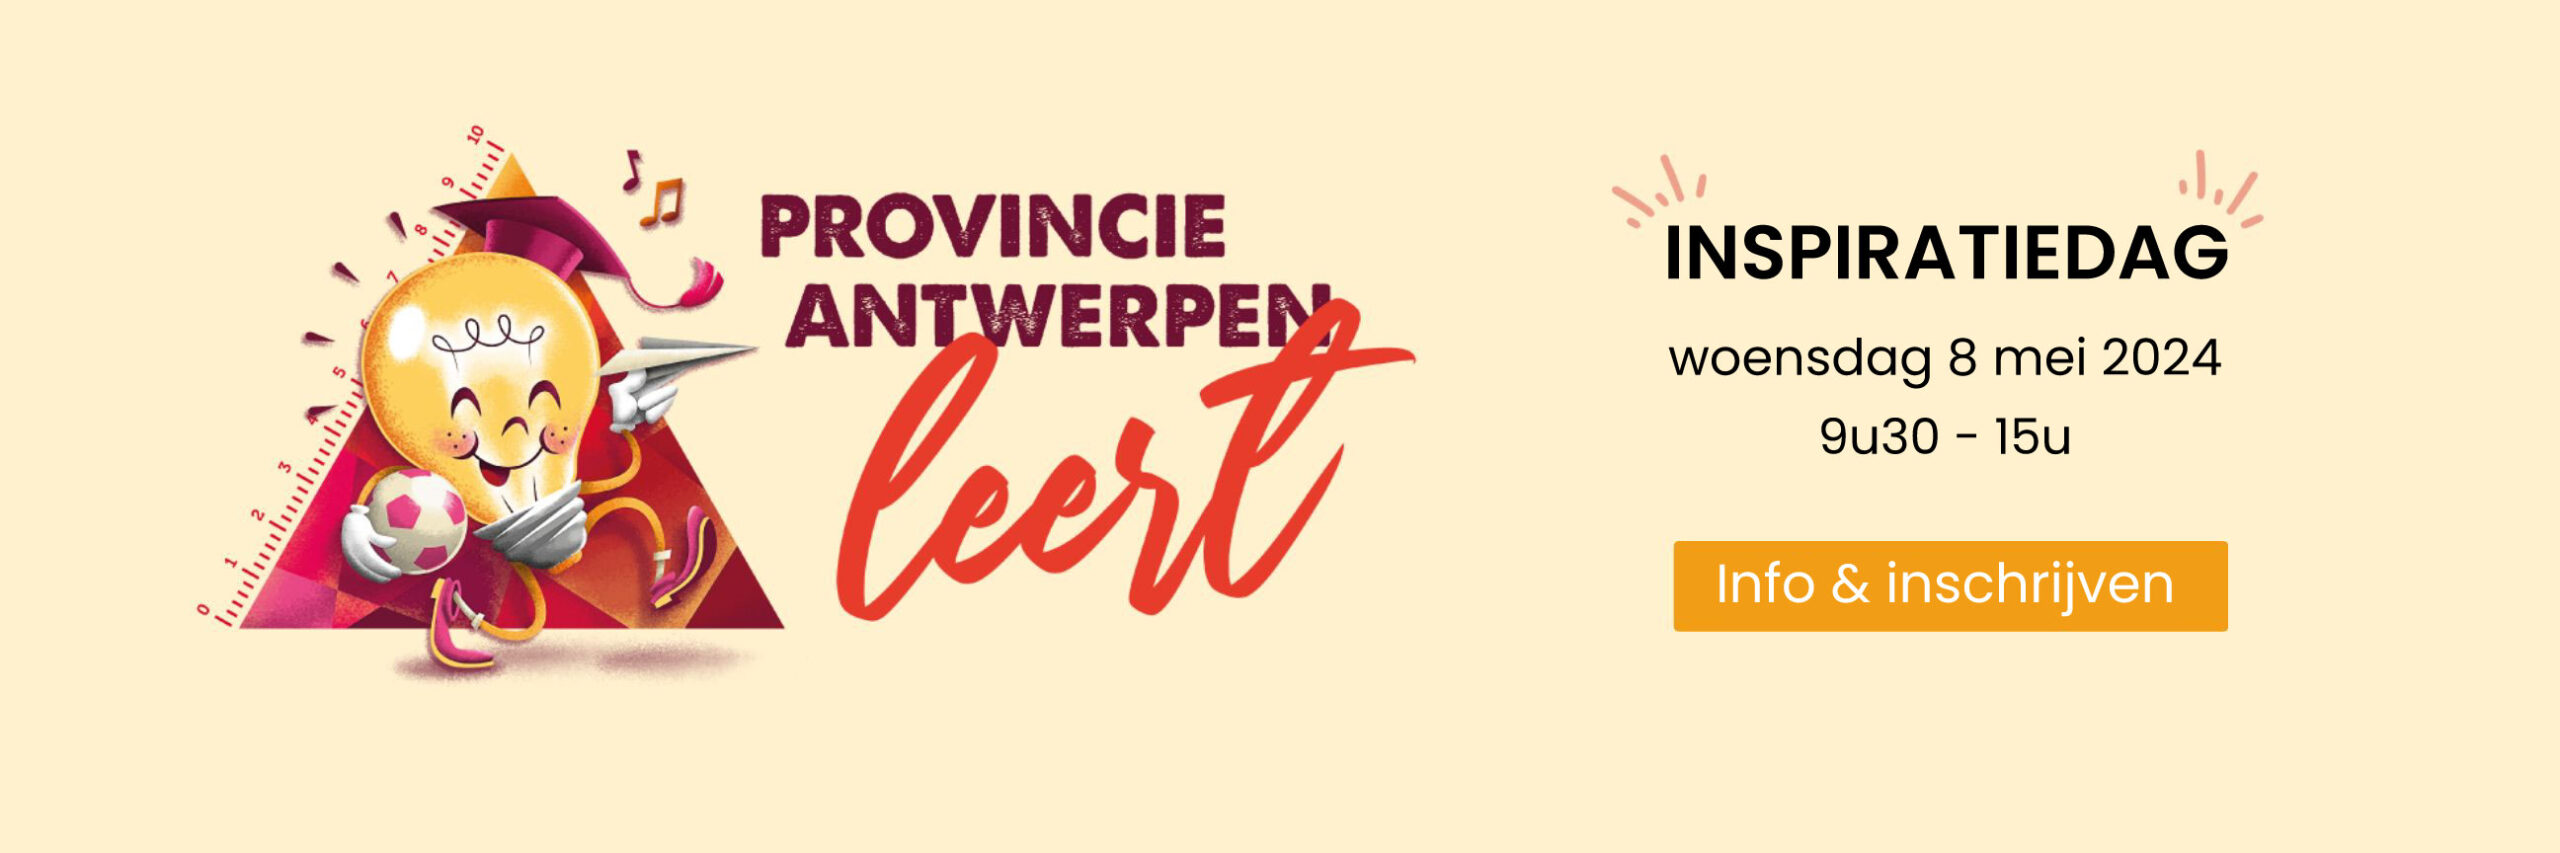 inspiratiedag Provincie Antwerpen Leert